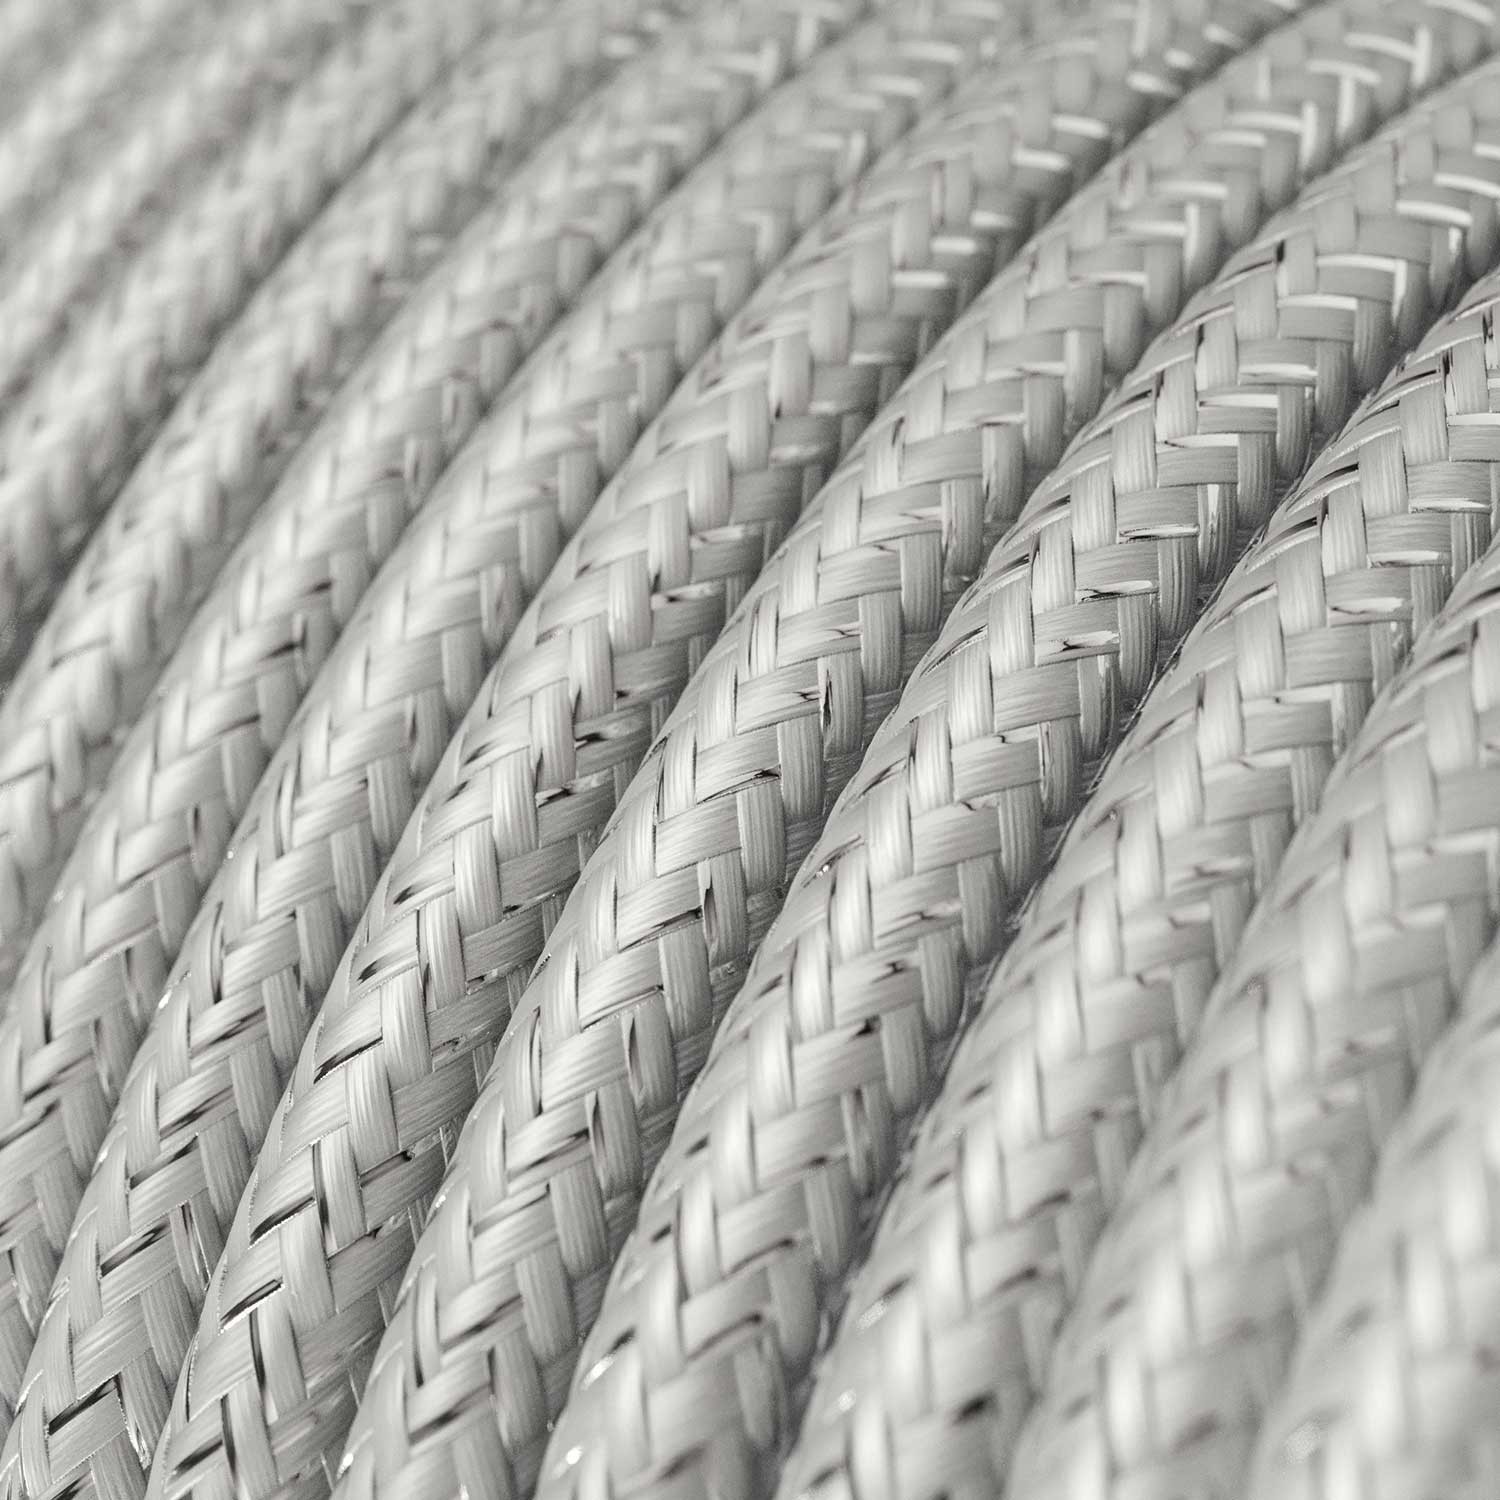 Câble textile Argenté pailleté brillant- L'Original Creative-Cables - RL02 rond 2x0,75mm / 3x0,75mm